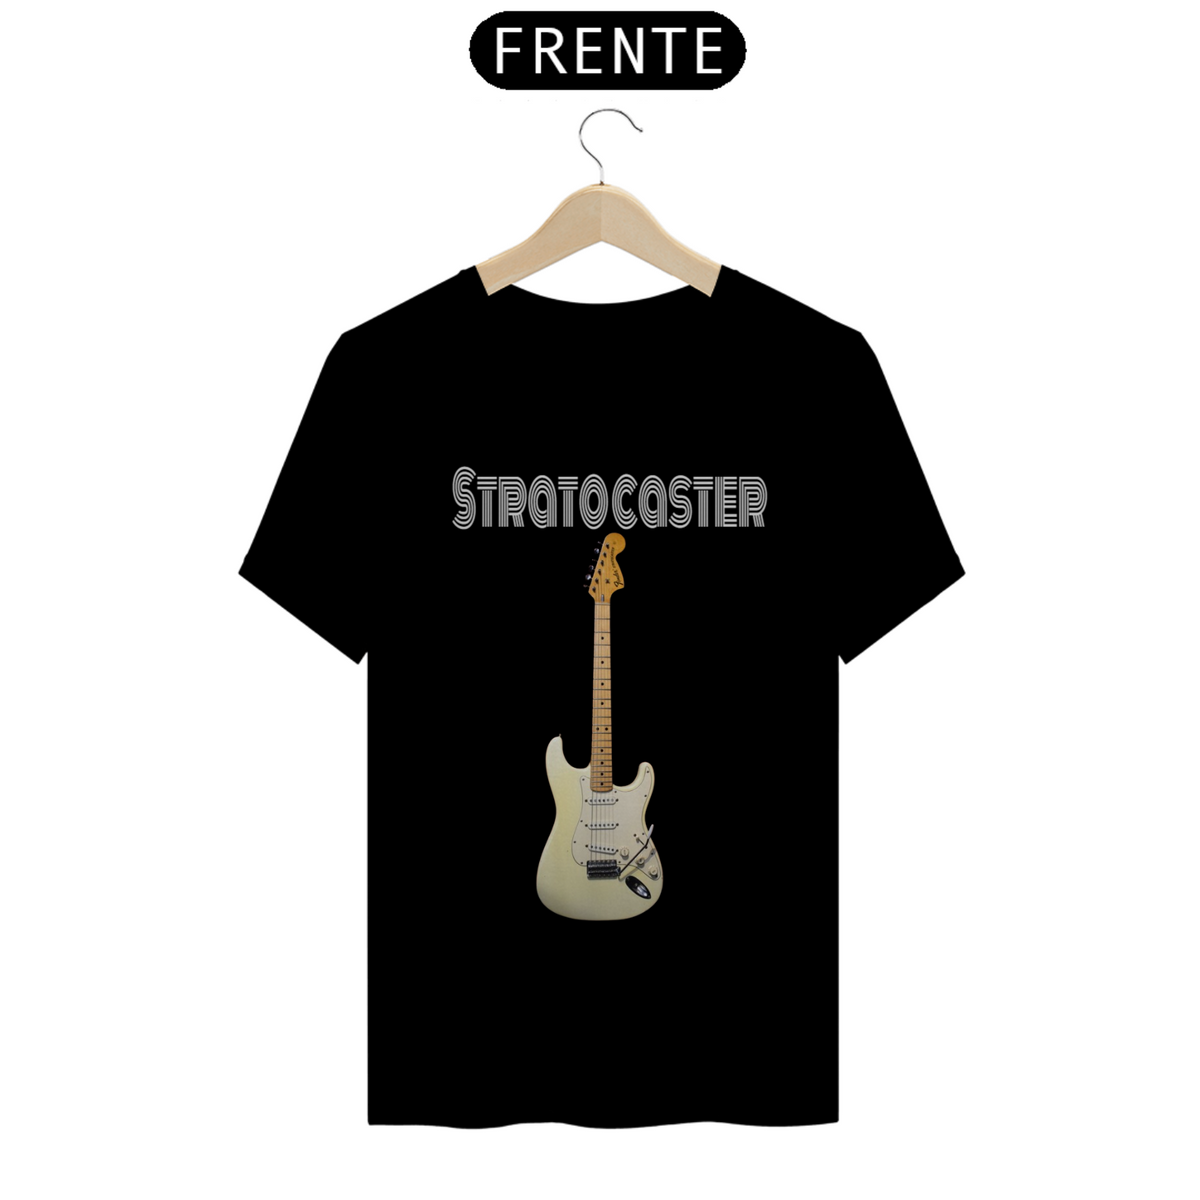 Nome do produto: Stratocaster